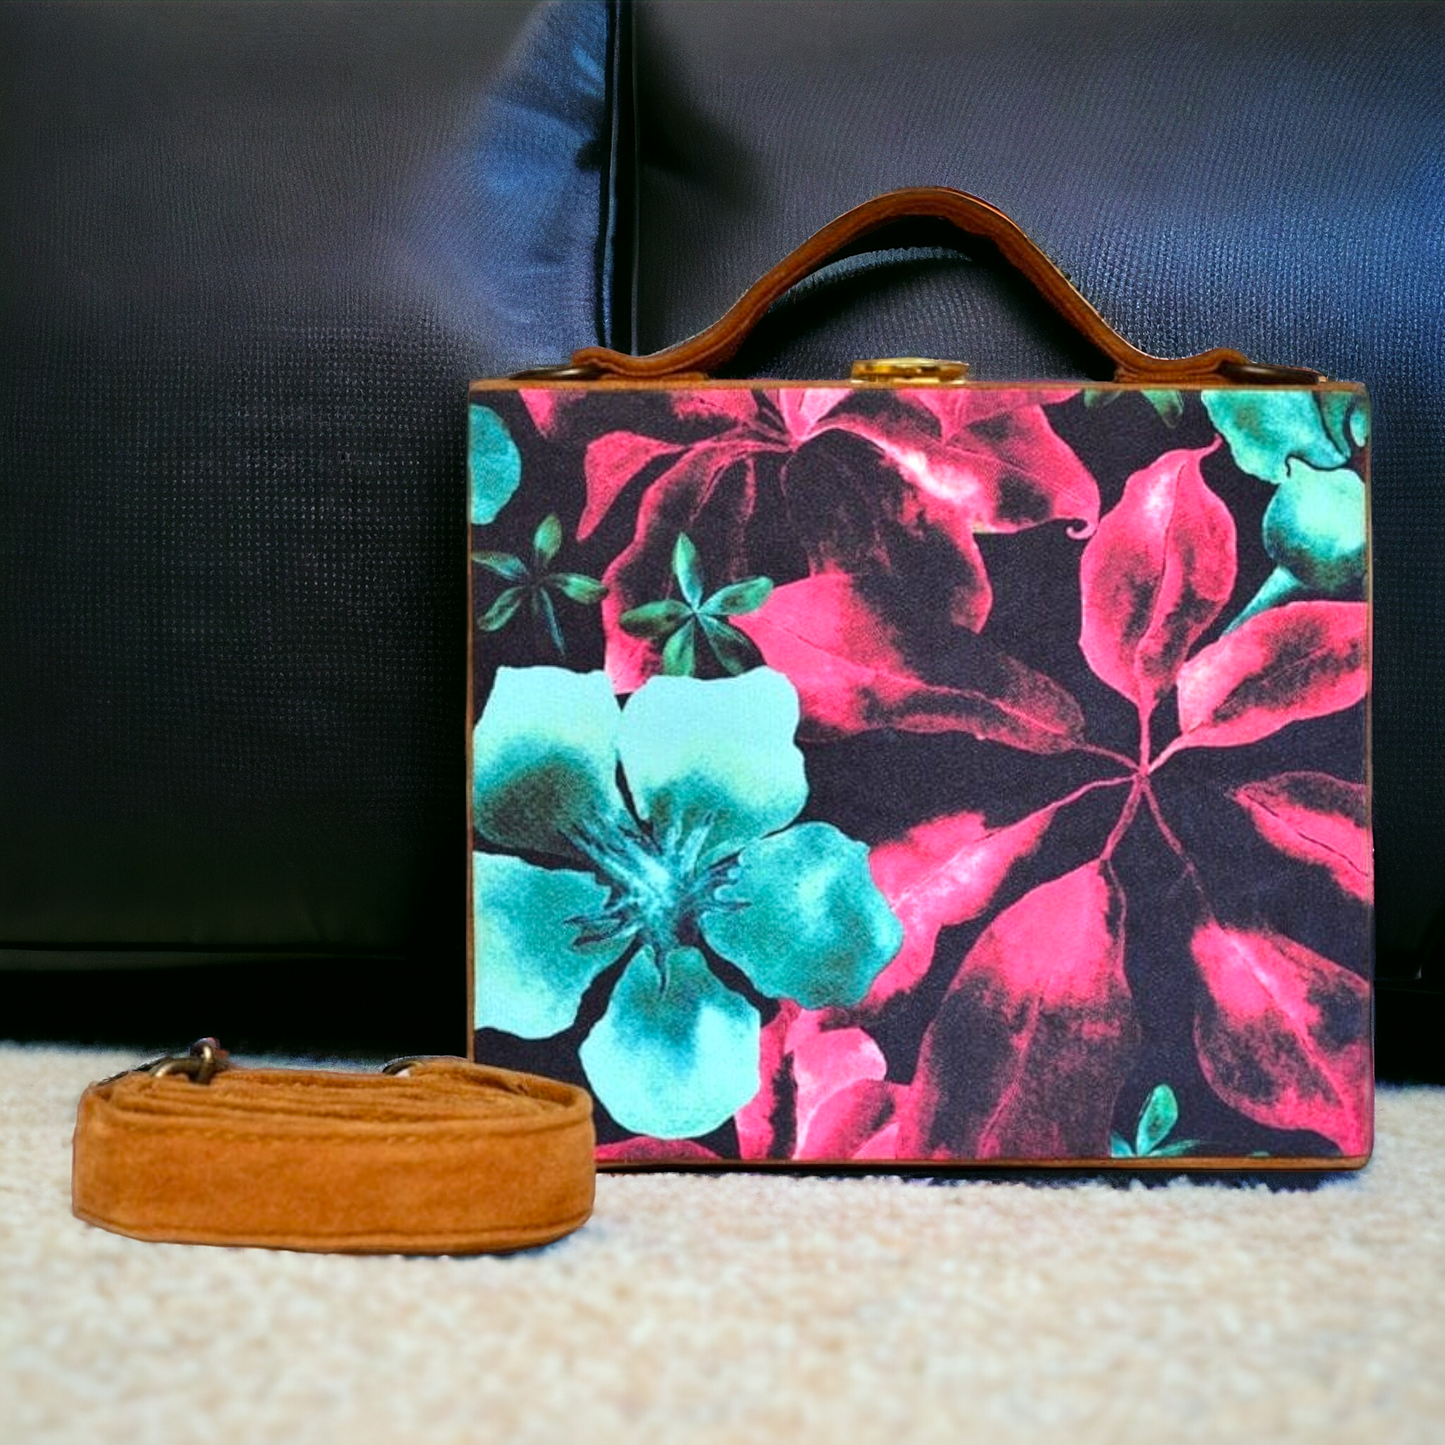 Clutch - Briefcase Floral